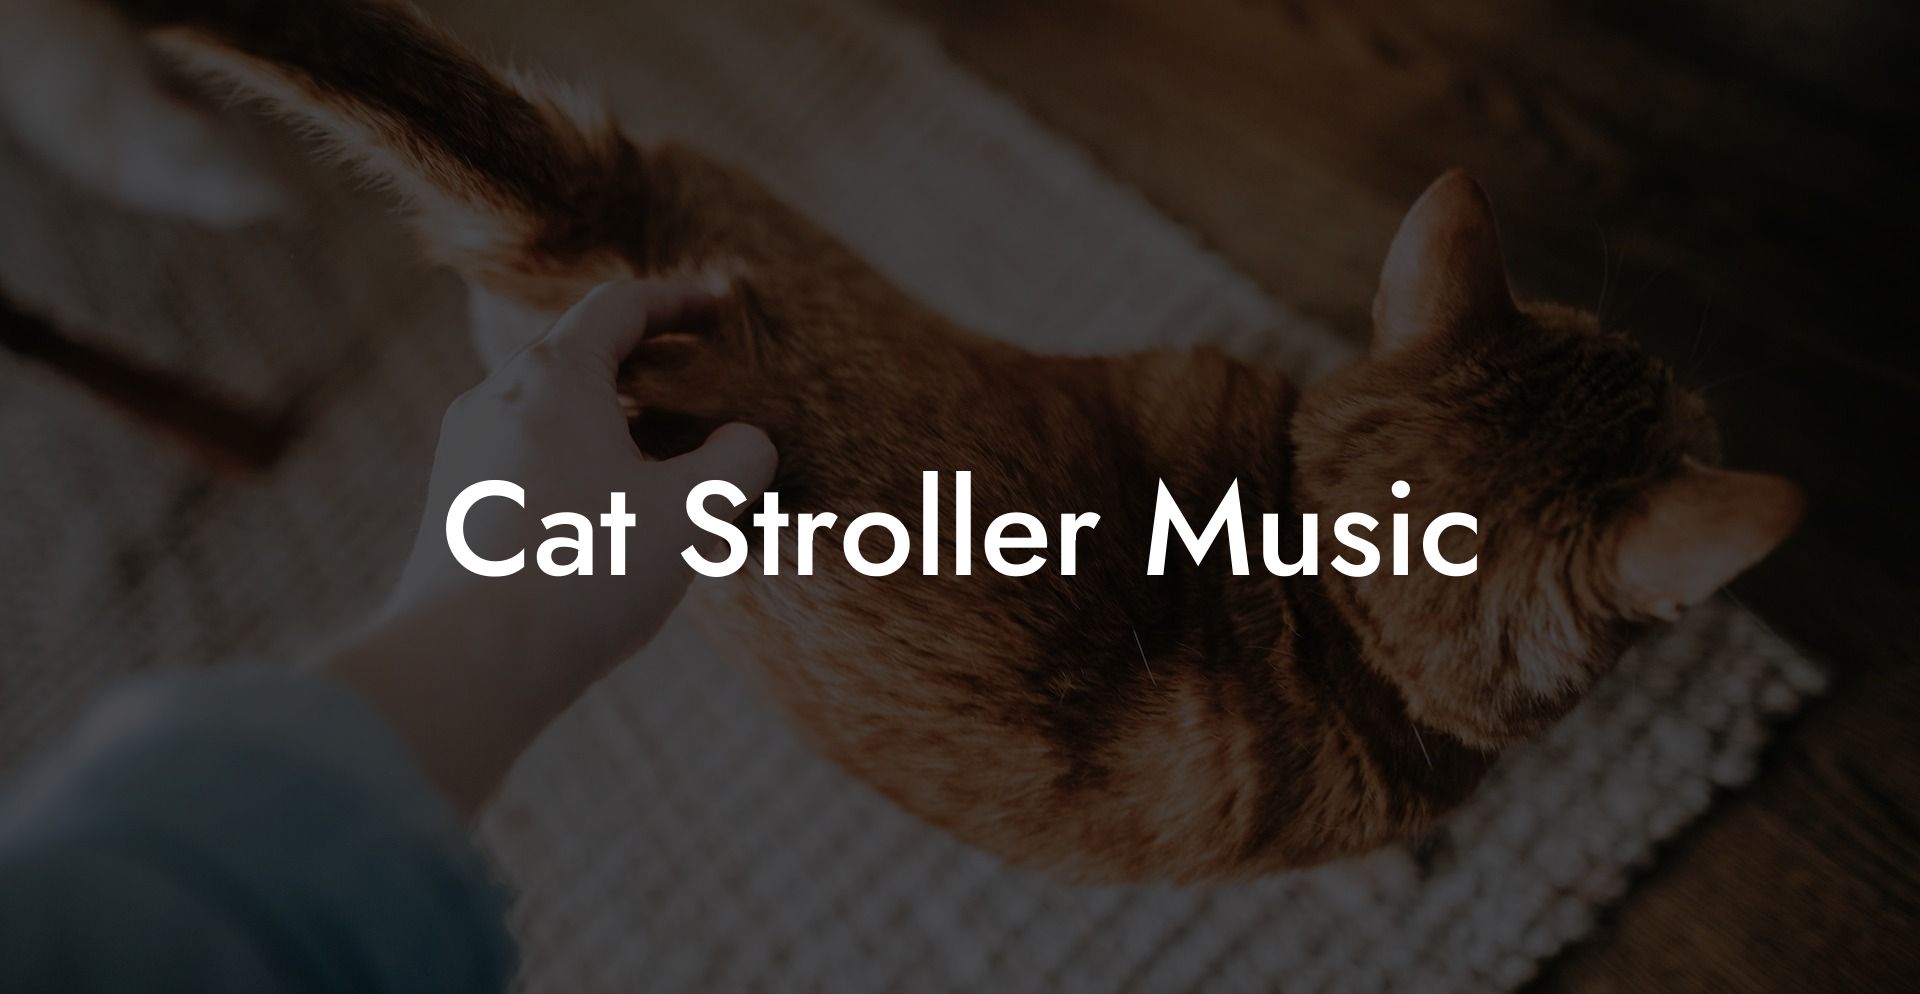 Cat Stroller Music